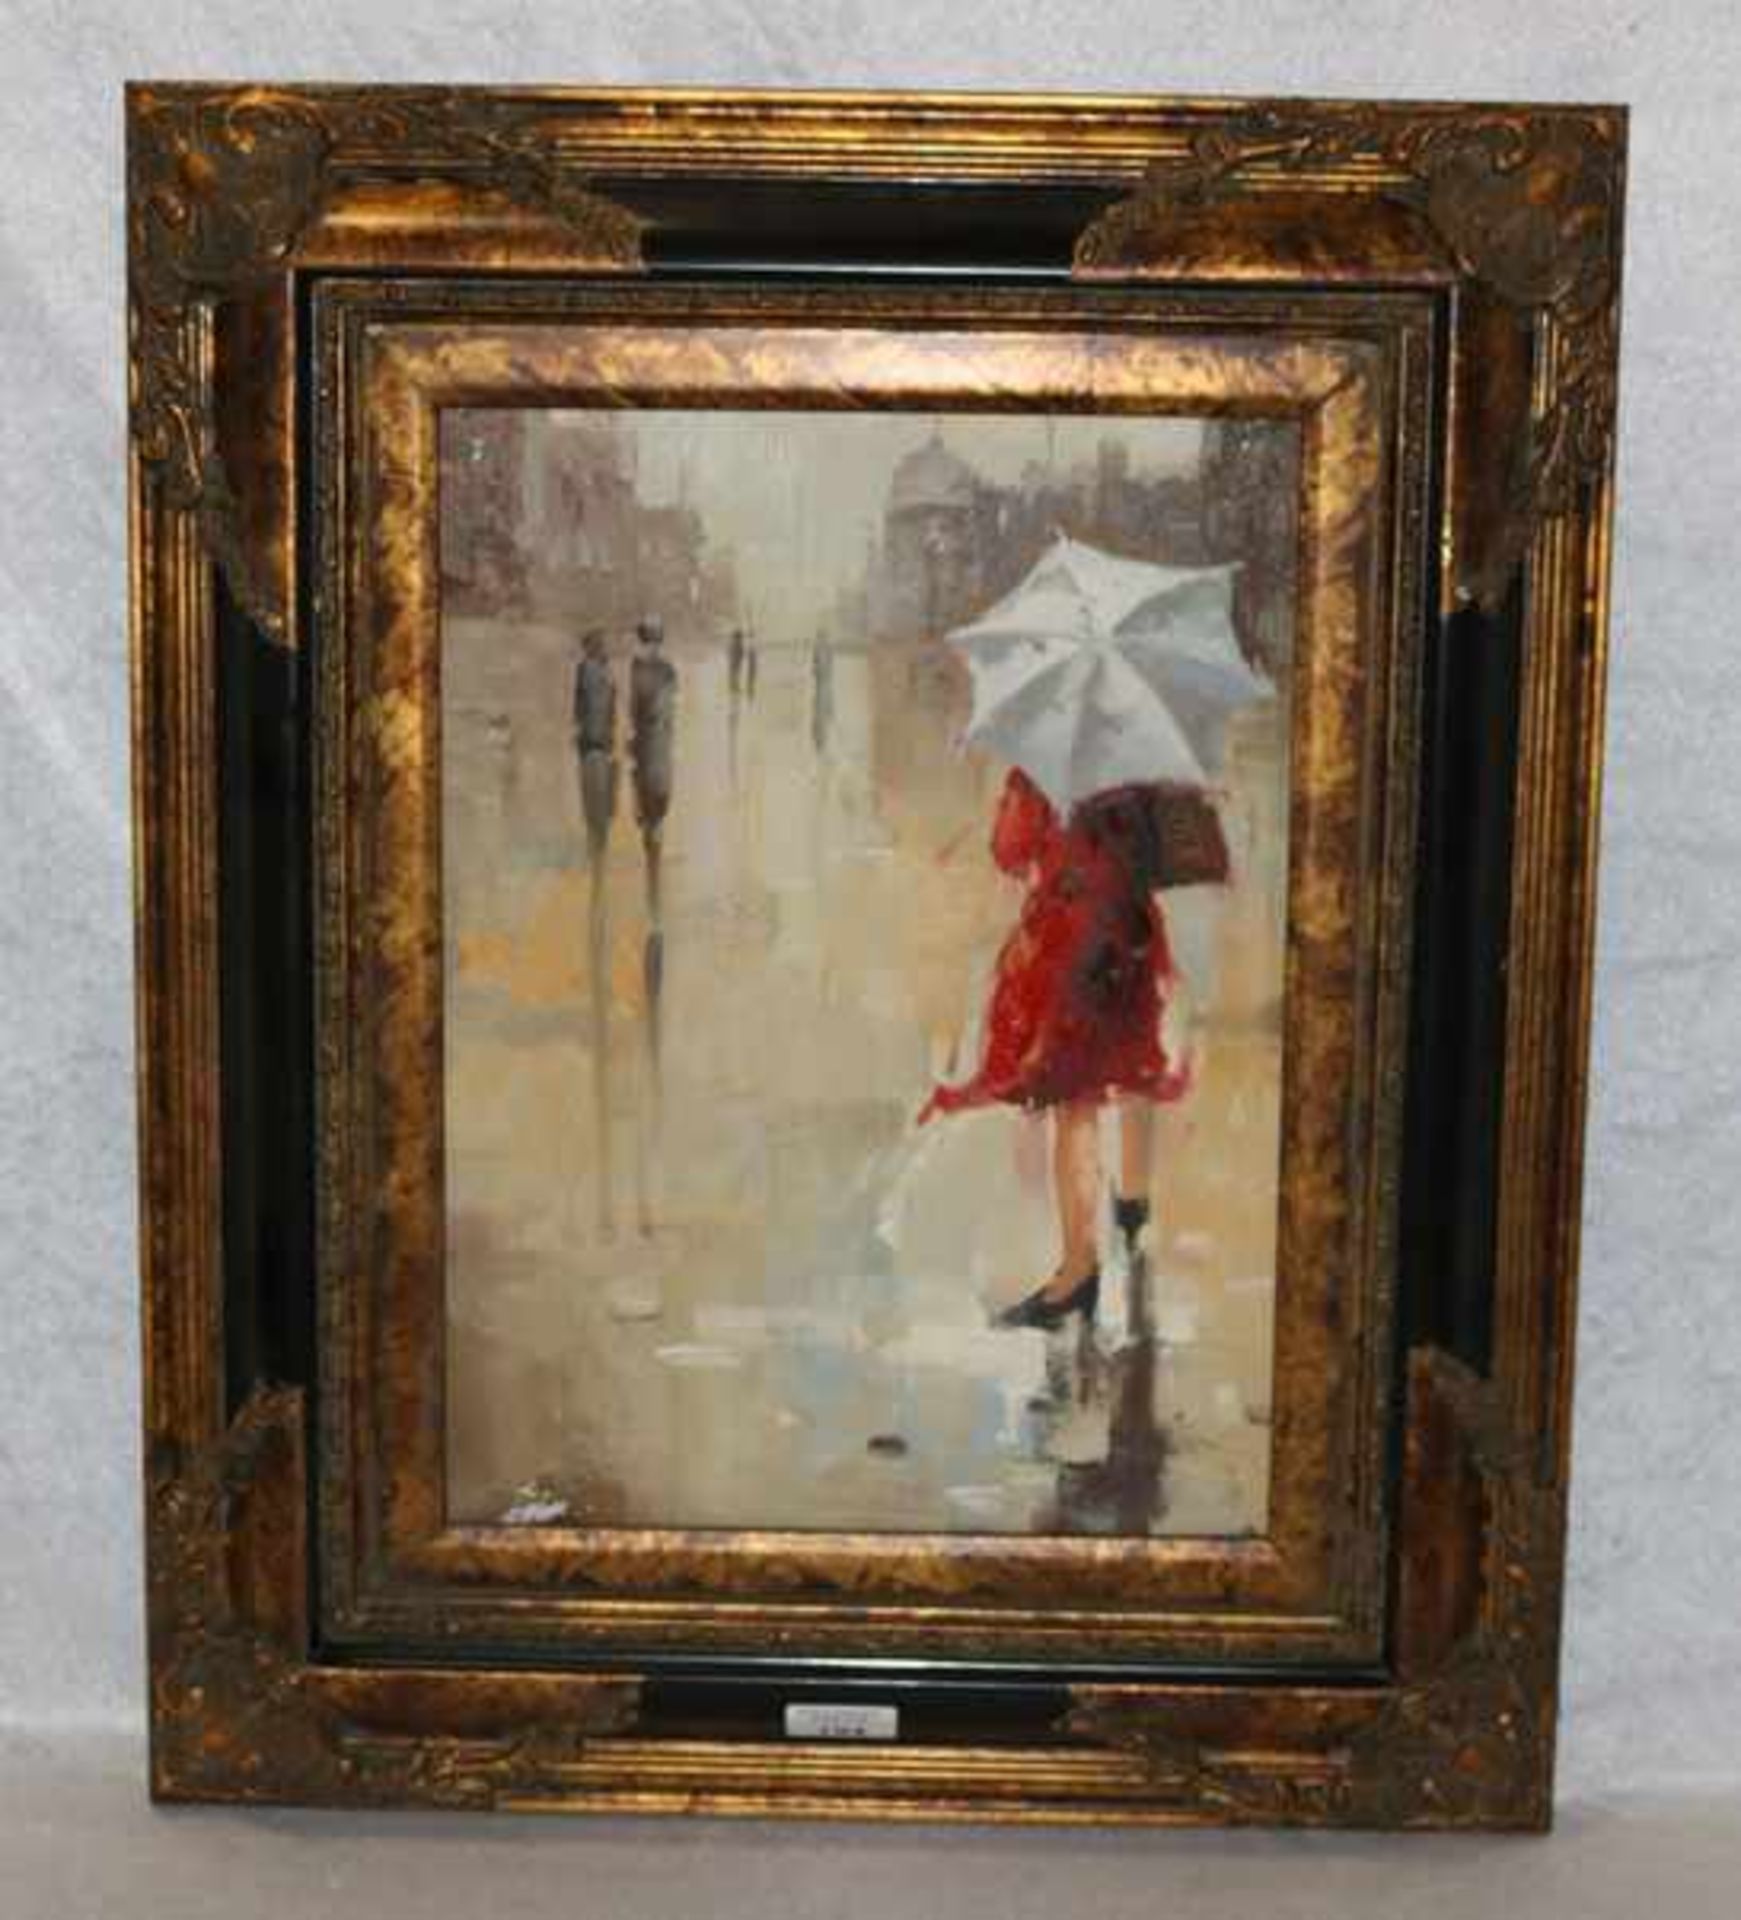 Gemälde ÖL/LW 'Dame mit rotem Mantel und weißem Schirm', LW hat Farbablösungen, schön gerahmt,